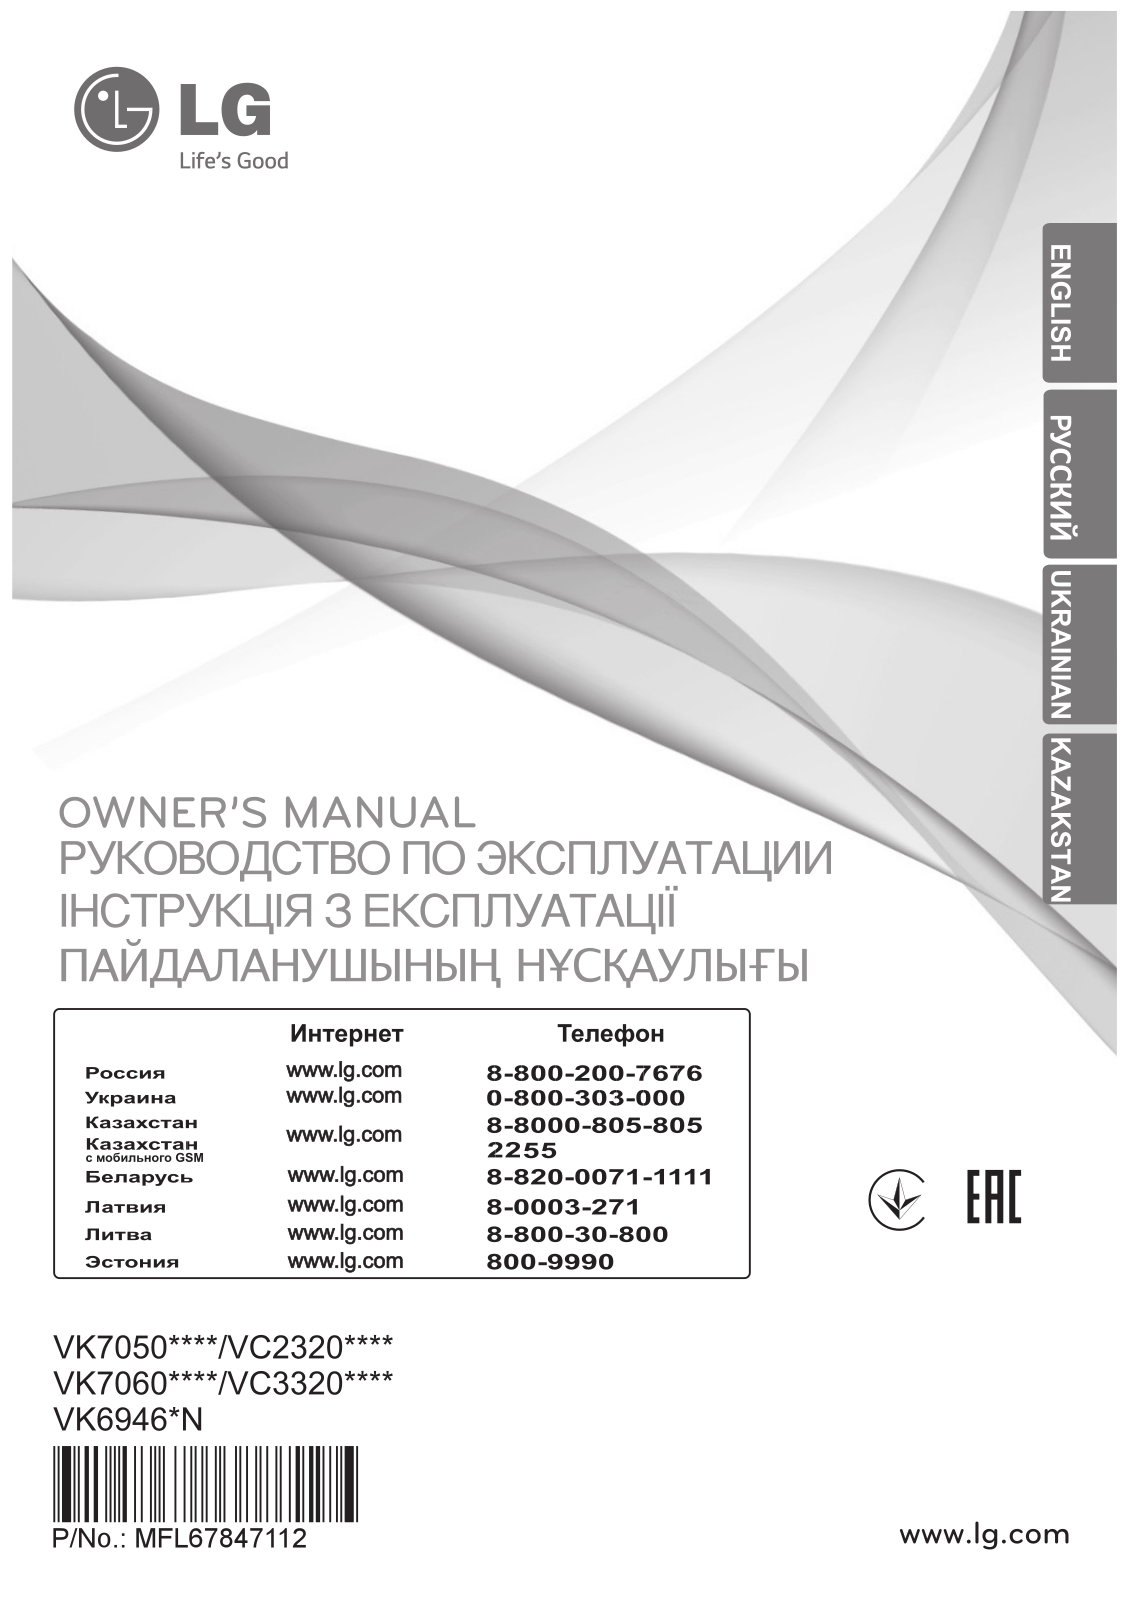 LG VK70505N Owner’s Manual